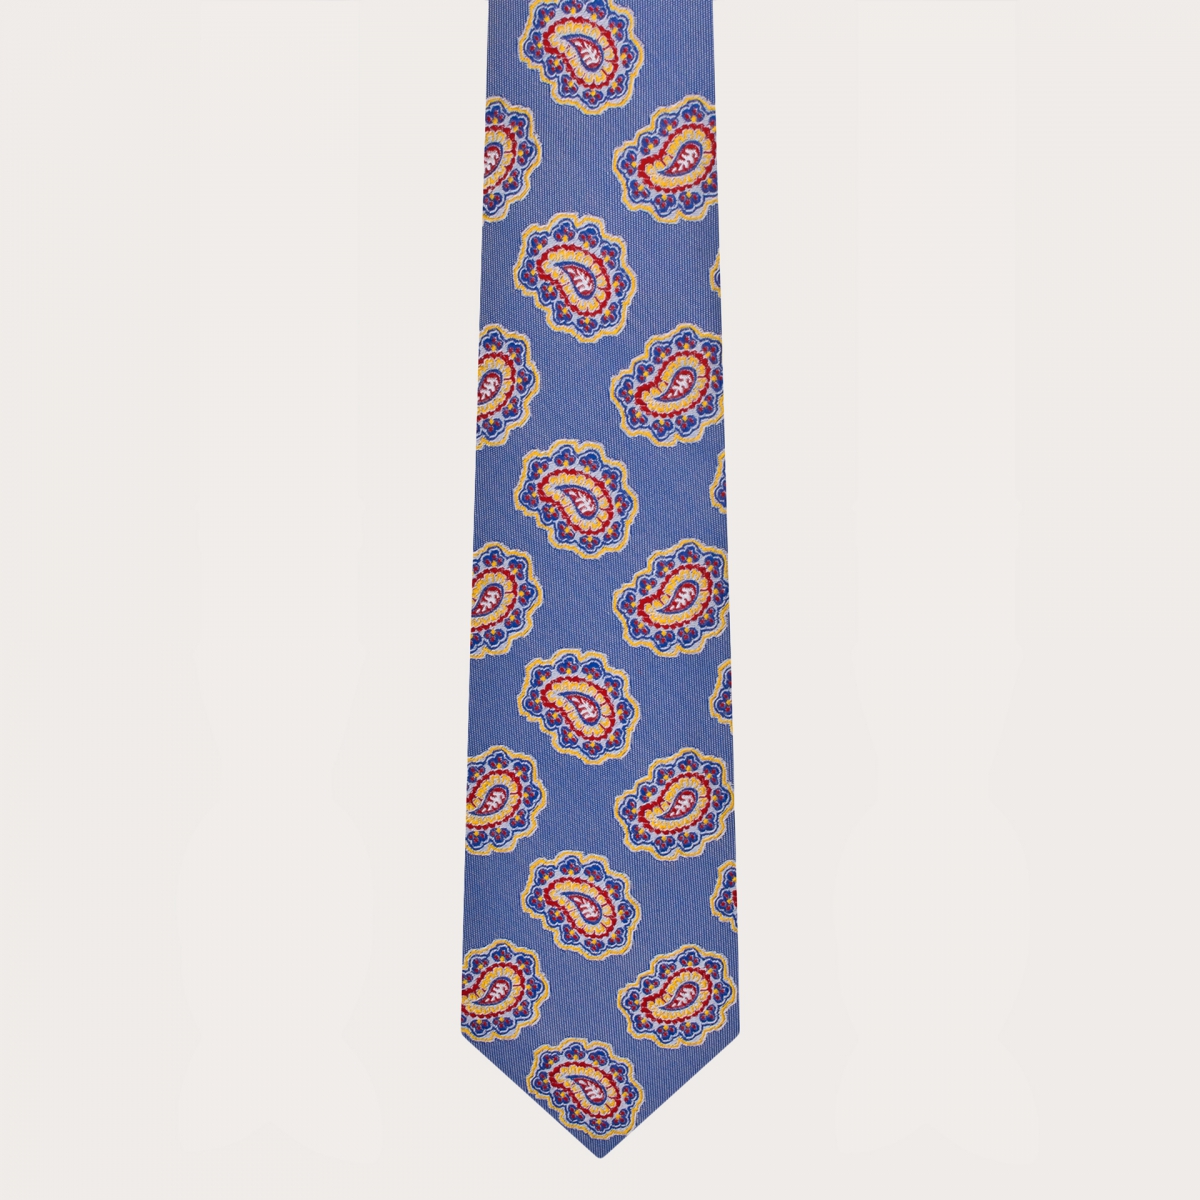 Cravatta azzurra in seta macro fantasia paisley